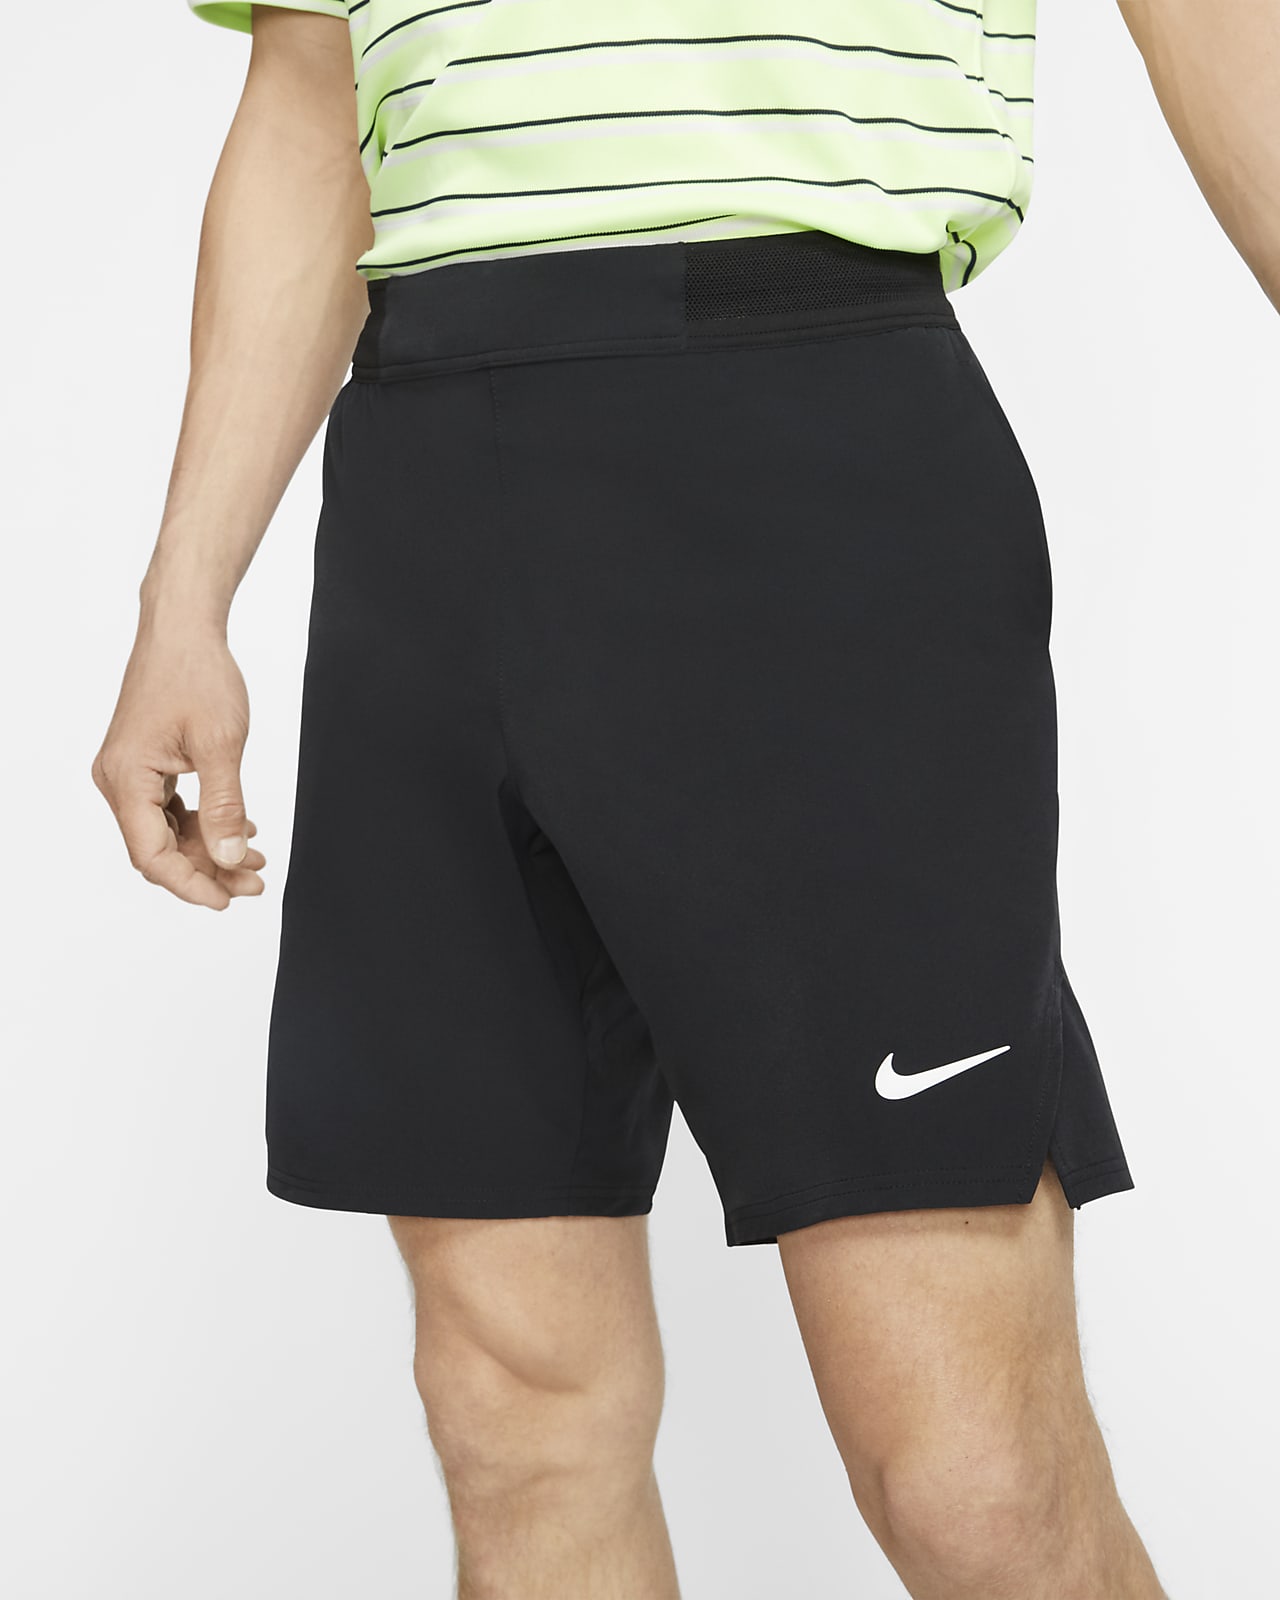 revelación Marco de referencia Gobernador NikeCourt Flex Ace Men's 9"/23cm Tennis Shorts. Nike IL